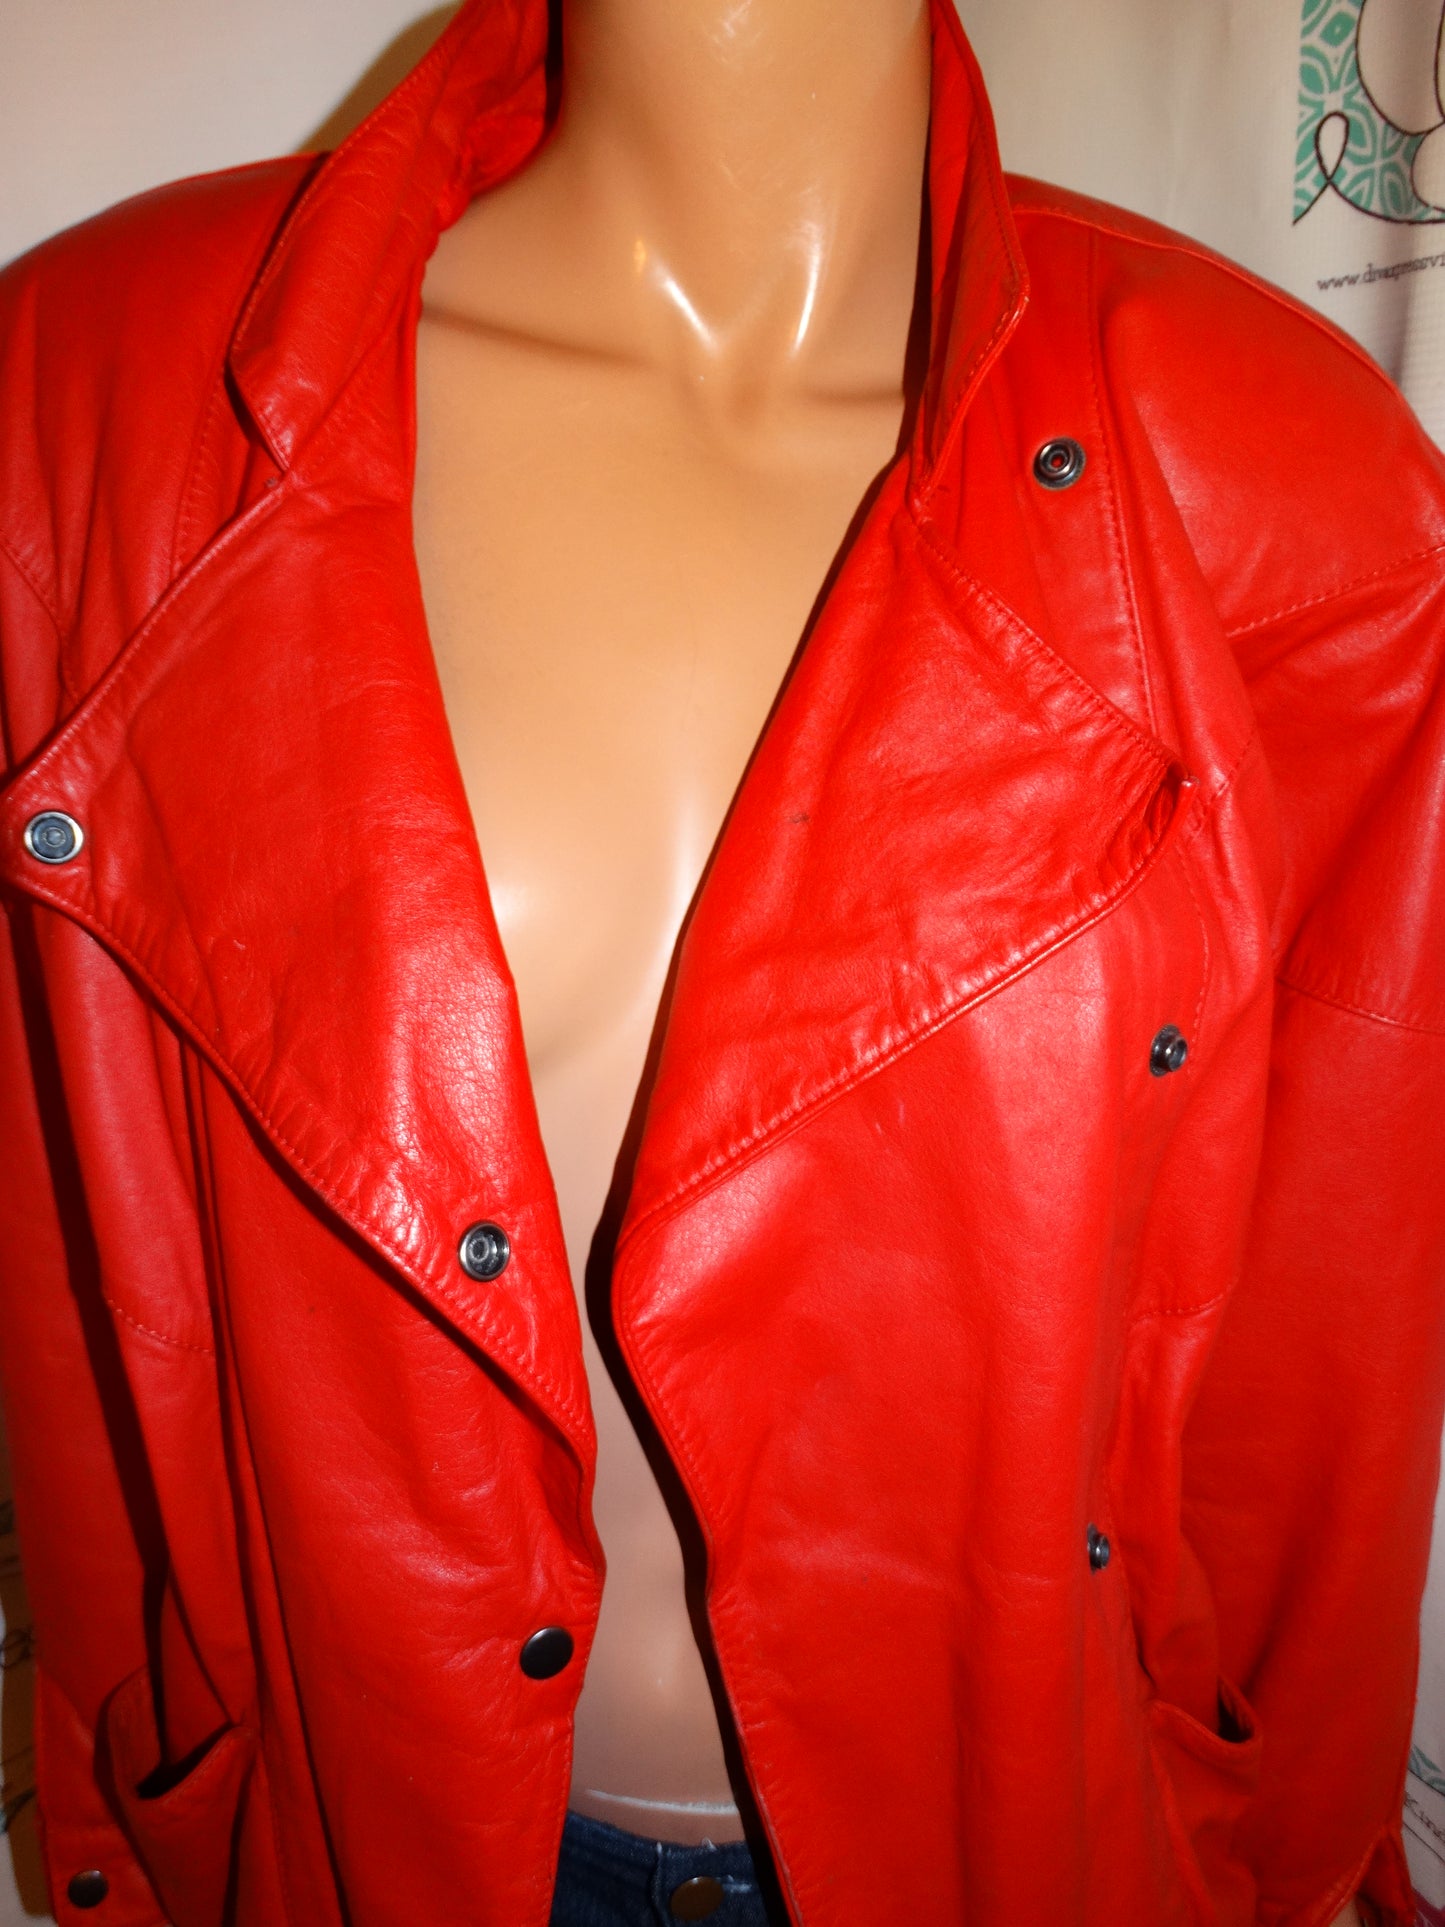 Vintage Red Leather Jacket Size L